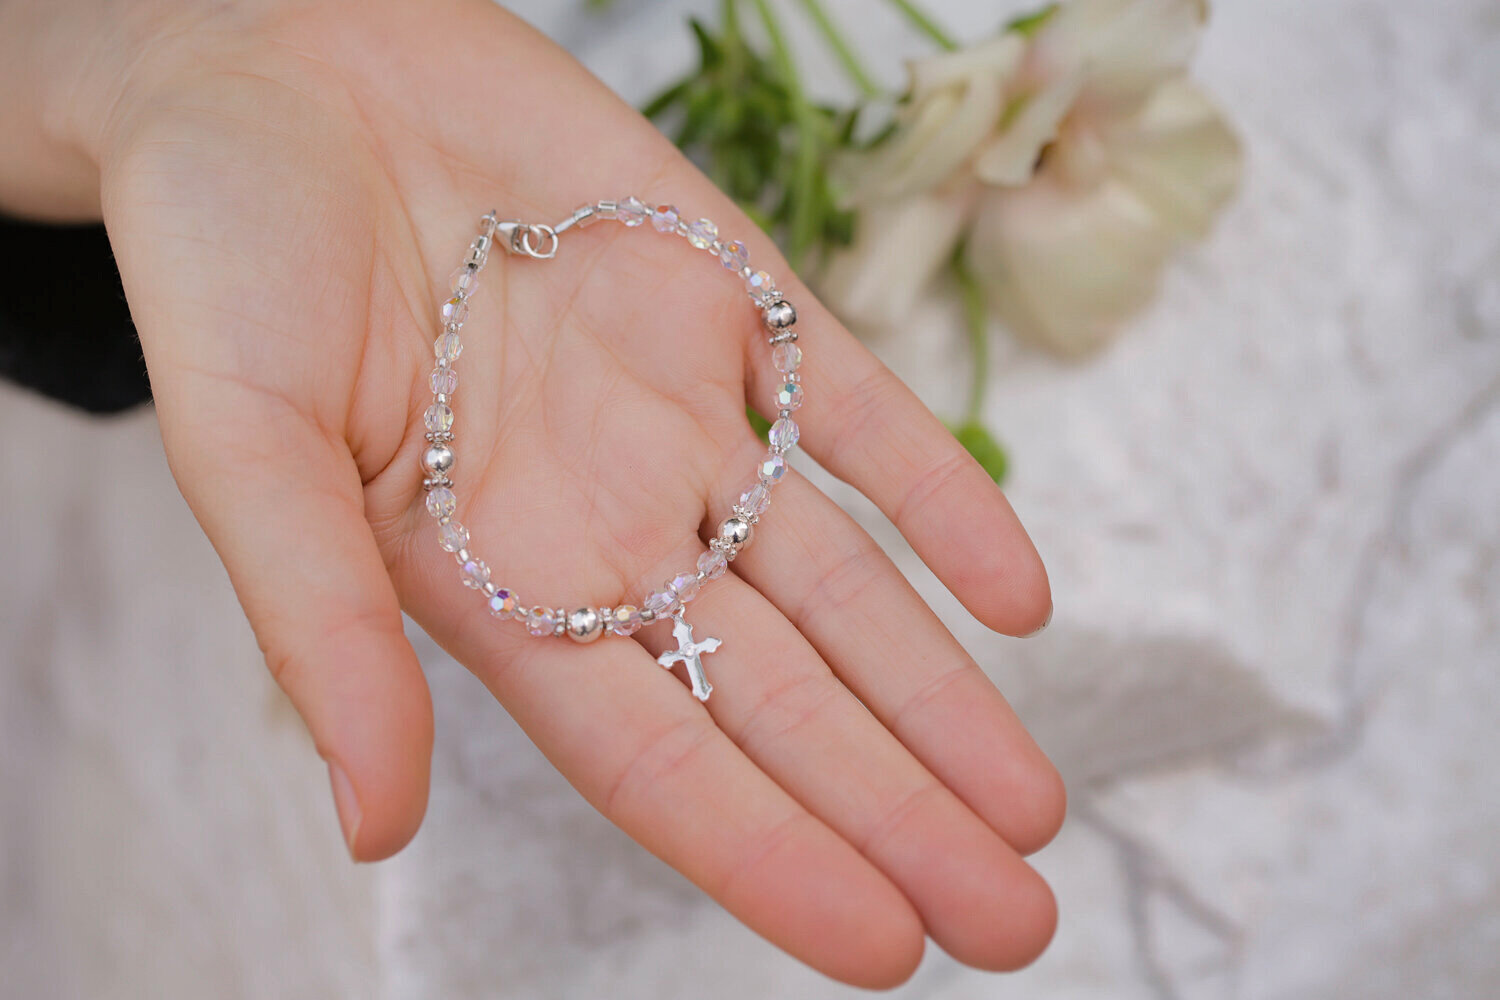 Swarovski crystal bracelet with cross — SAGRADA